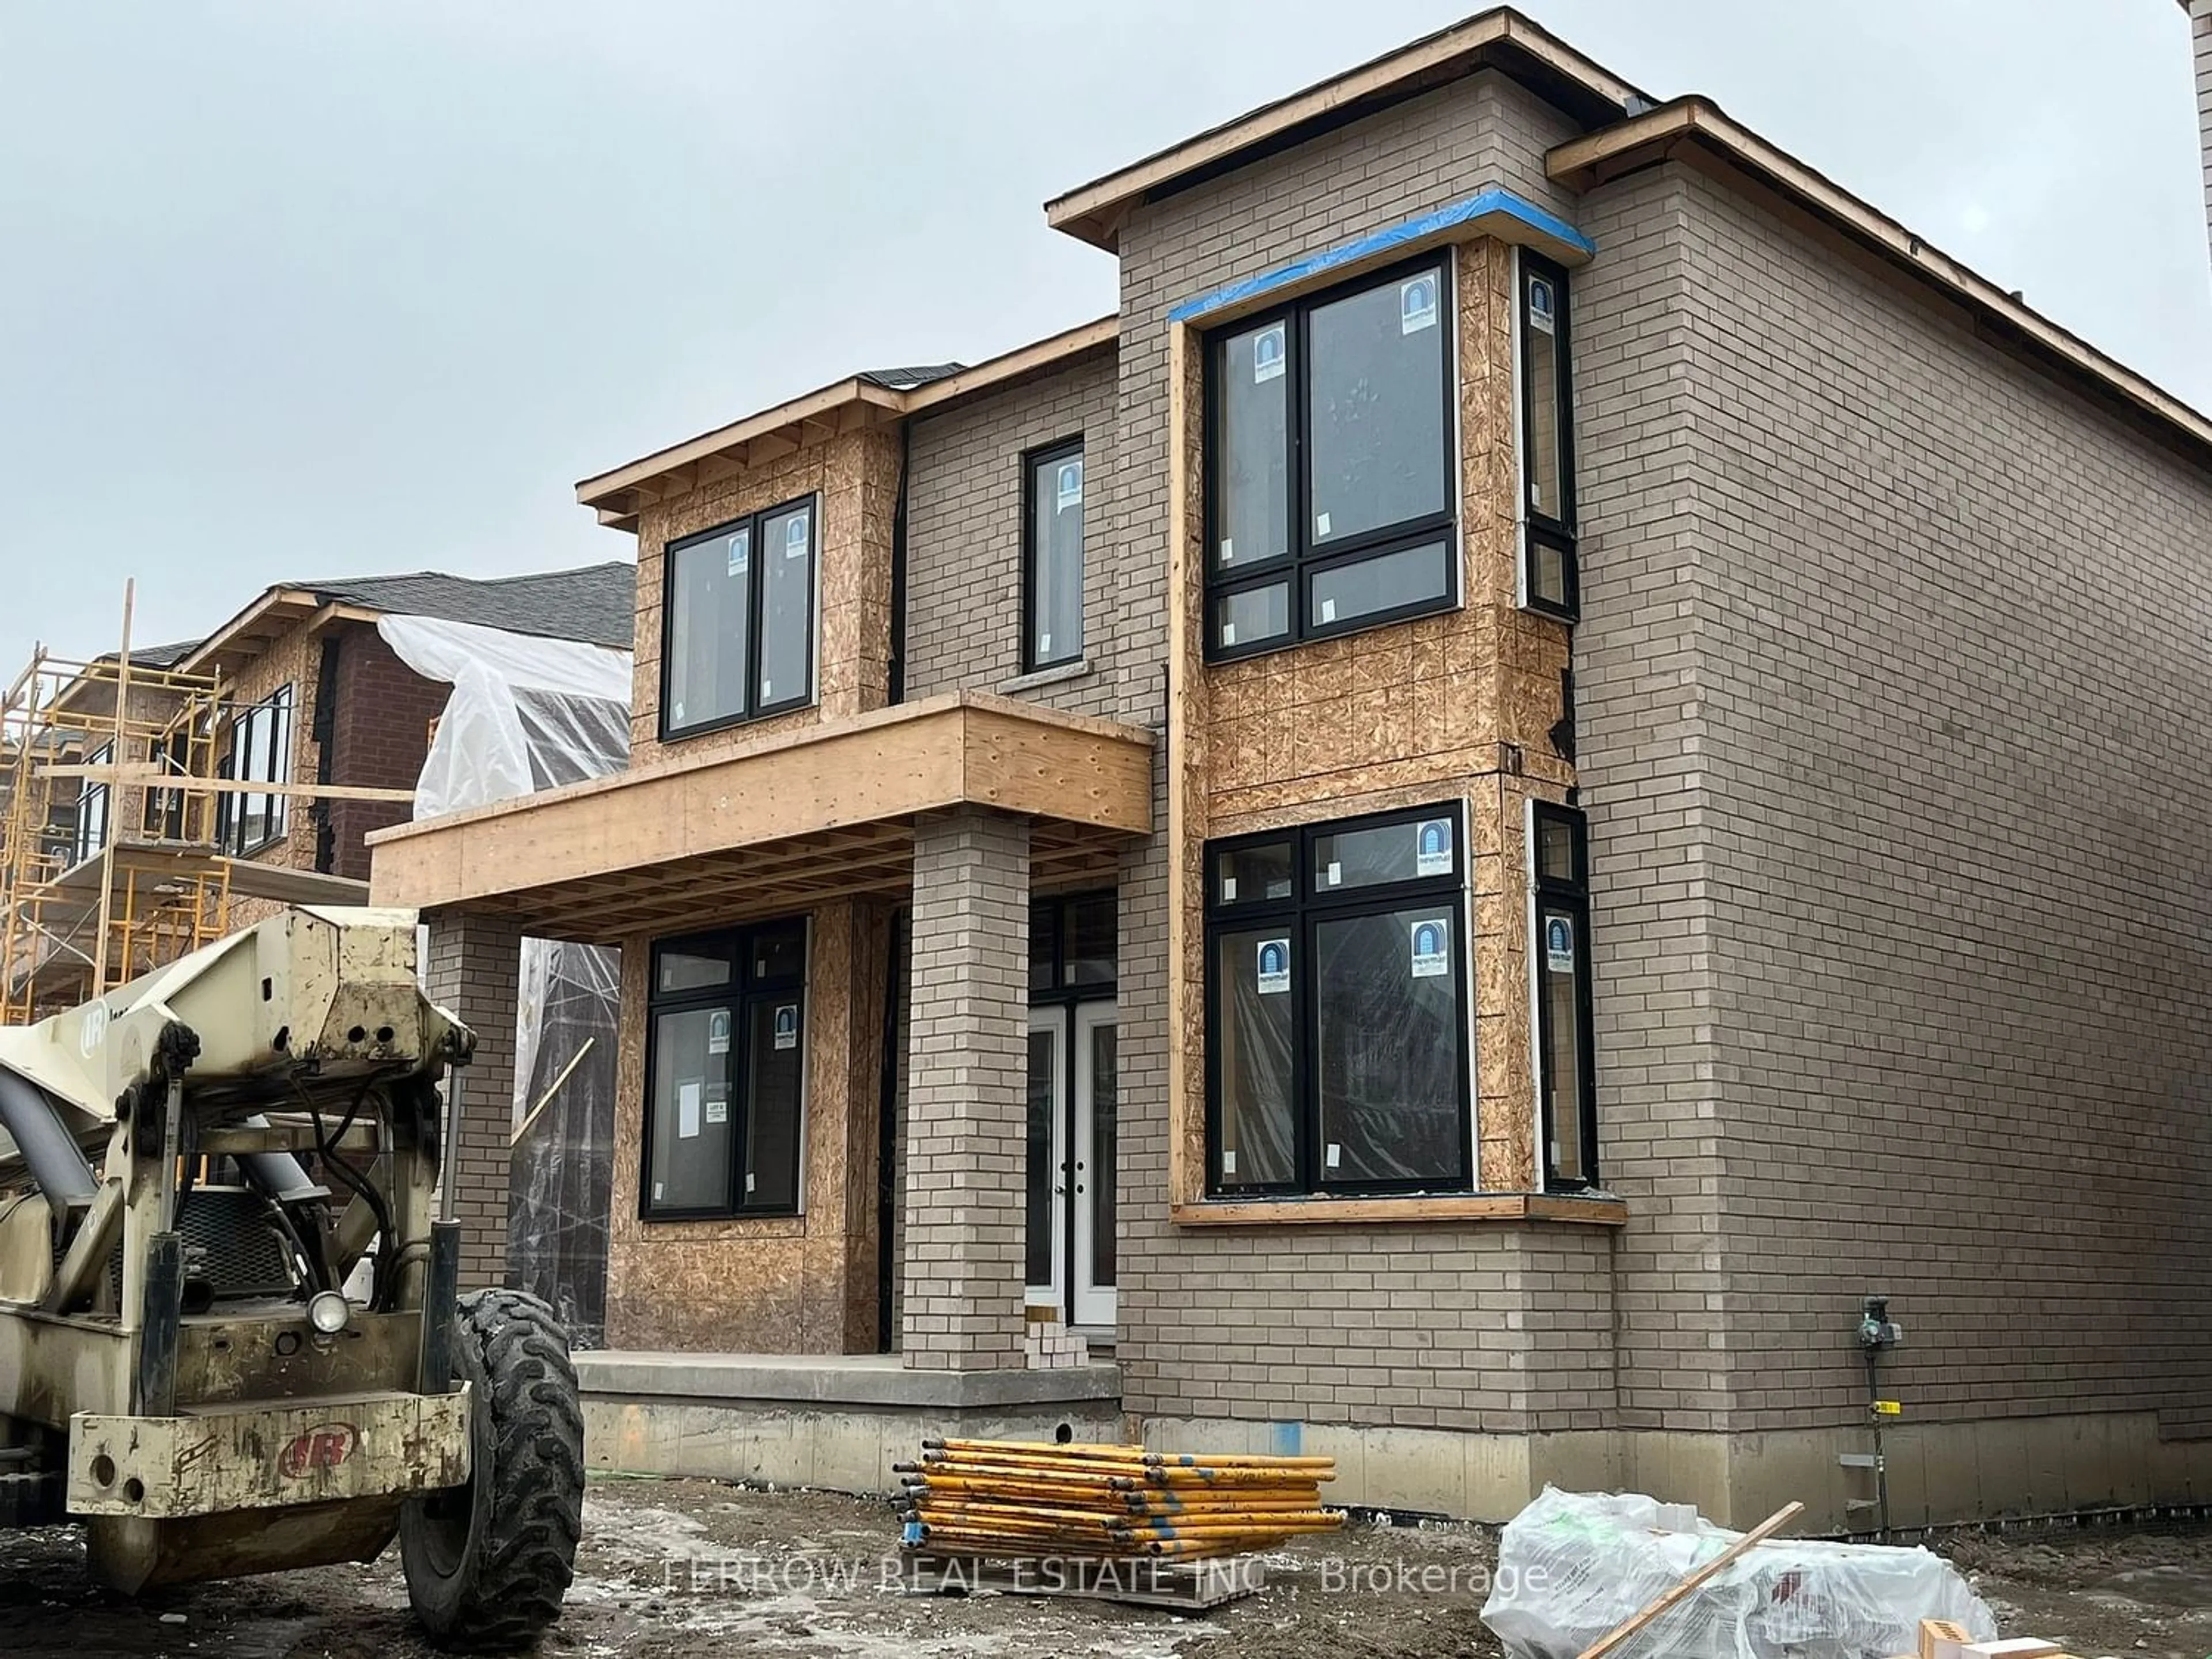 Home with brick exterior material for 595 Riverlands Ave, Markham Ontario L6V 0V5